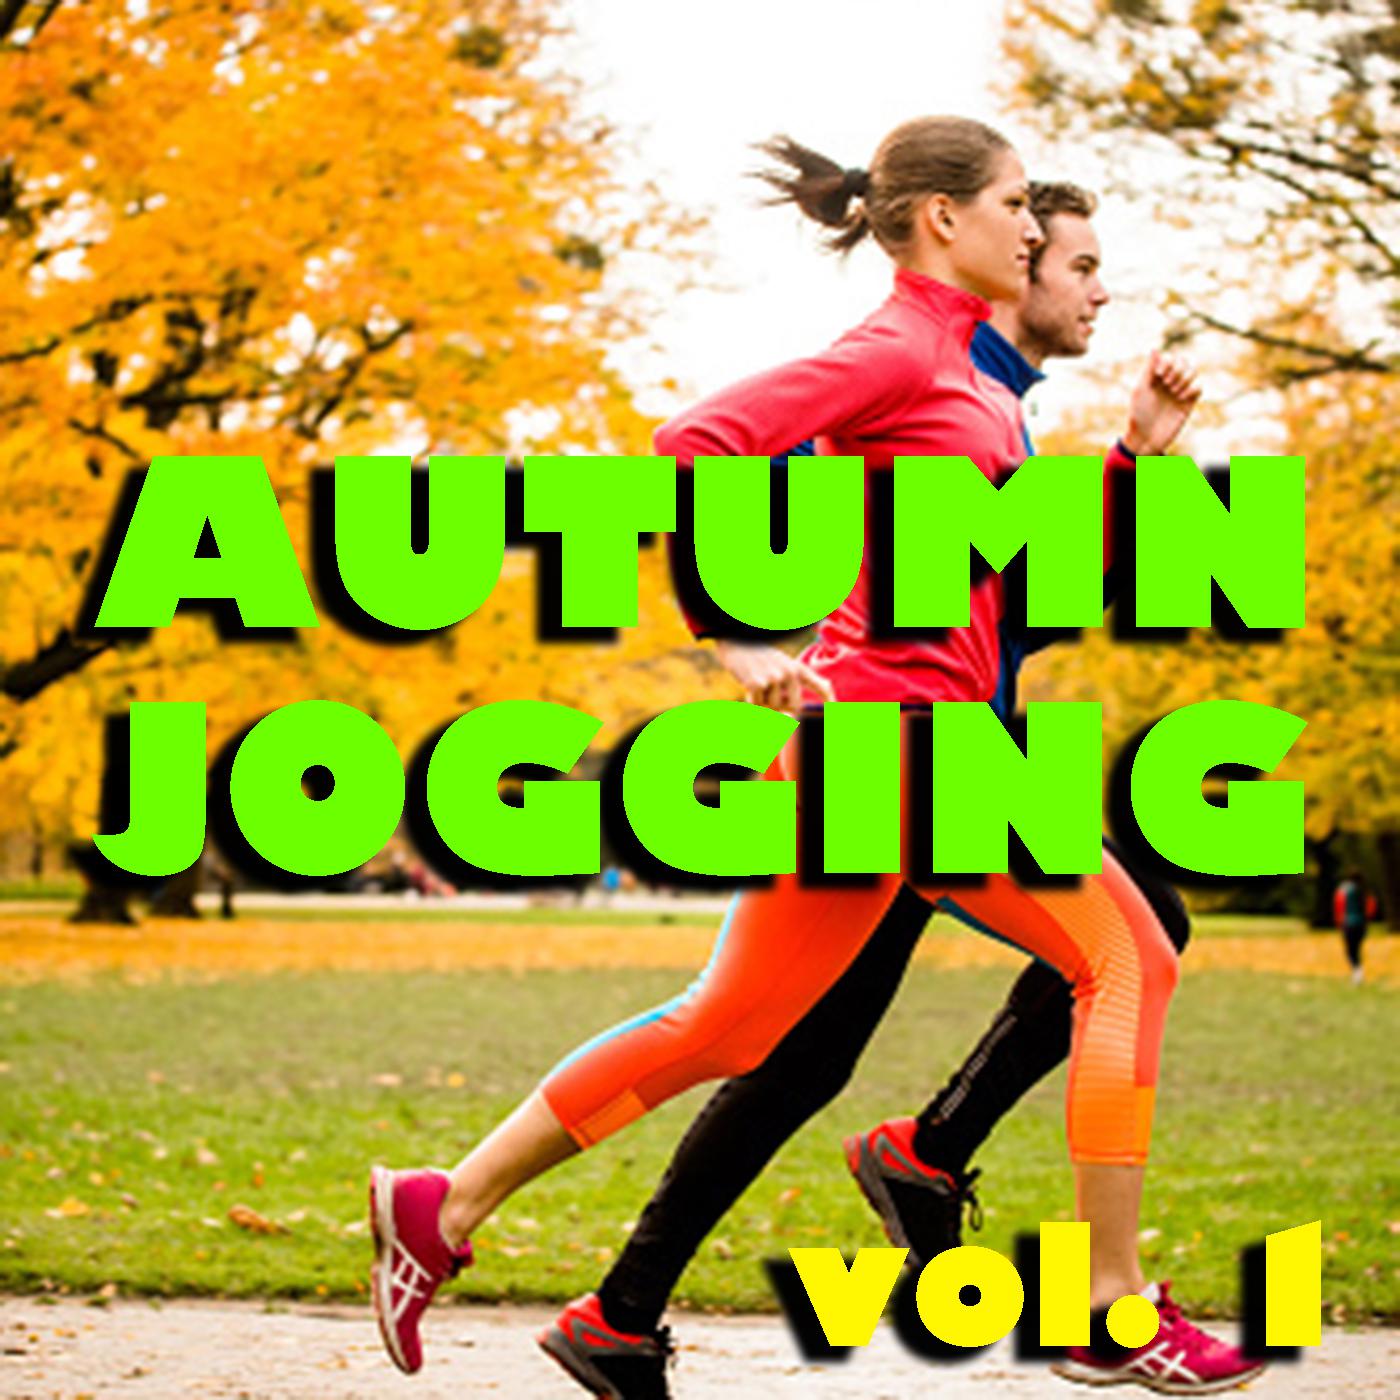 Autumn Jogging vol. 1